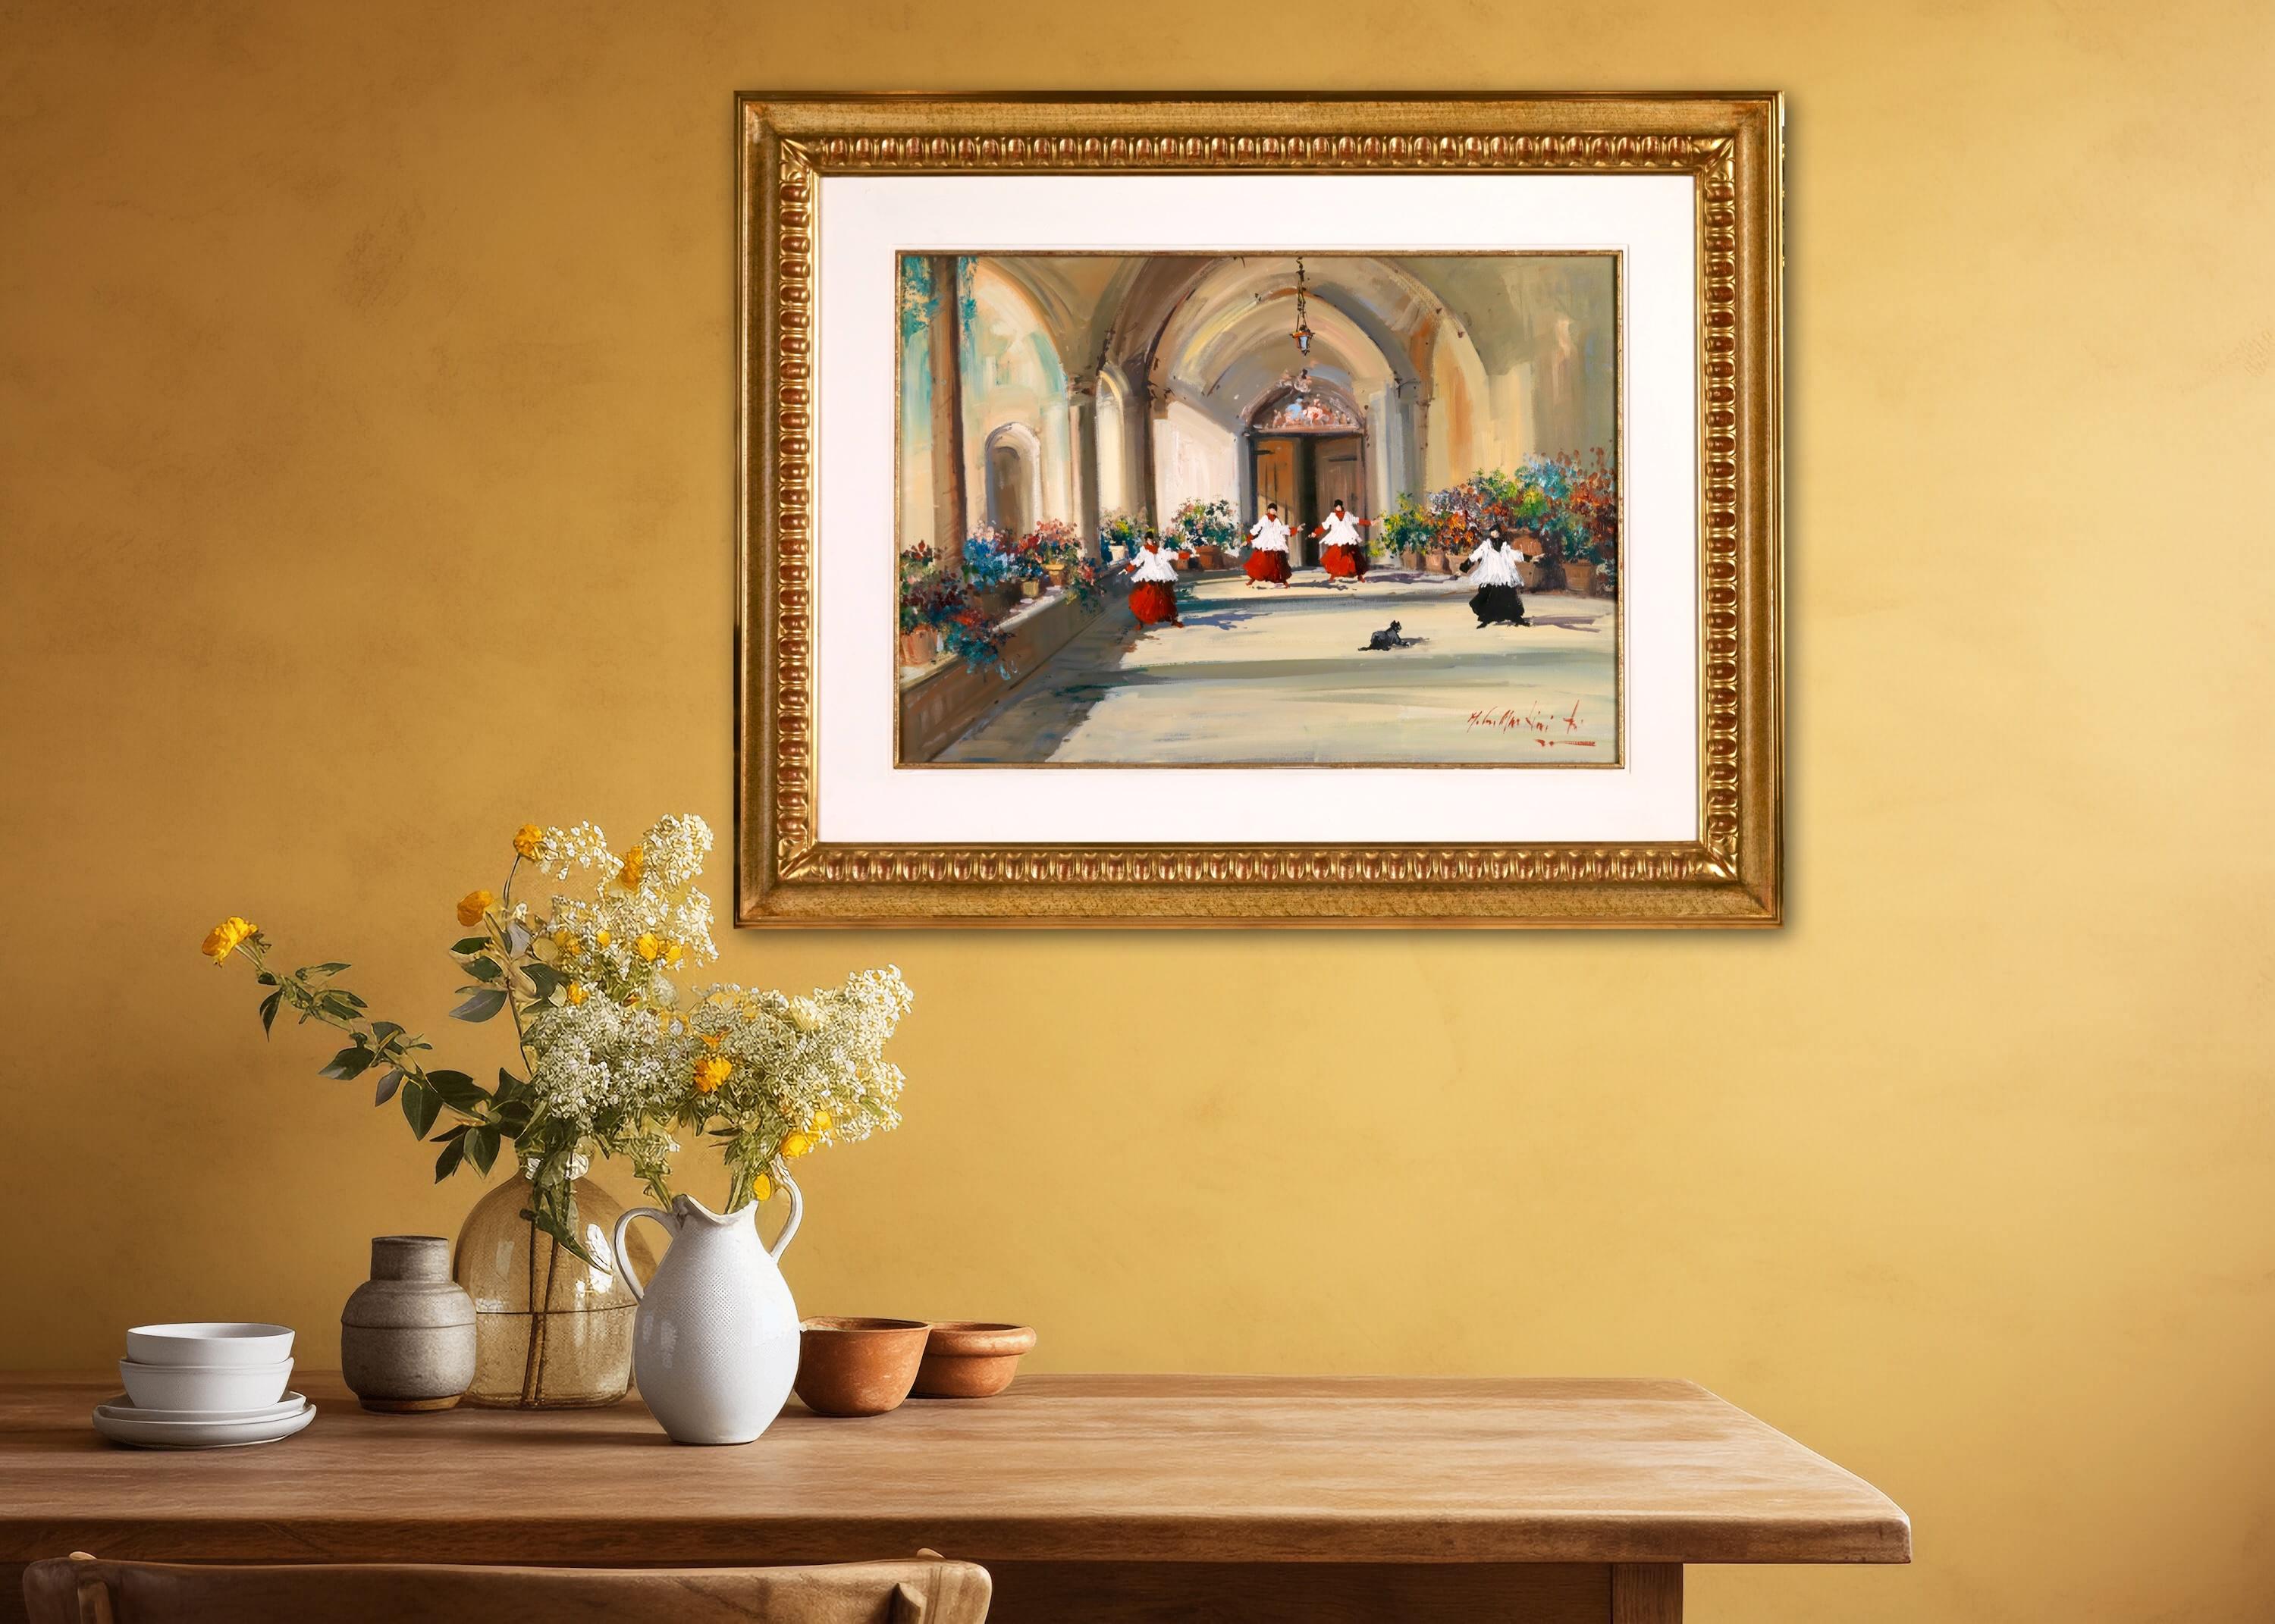 L'ospite nel chiostro – Painting von Norberto Martini